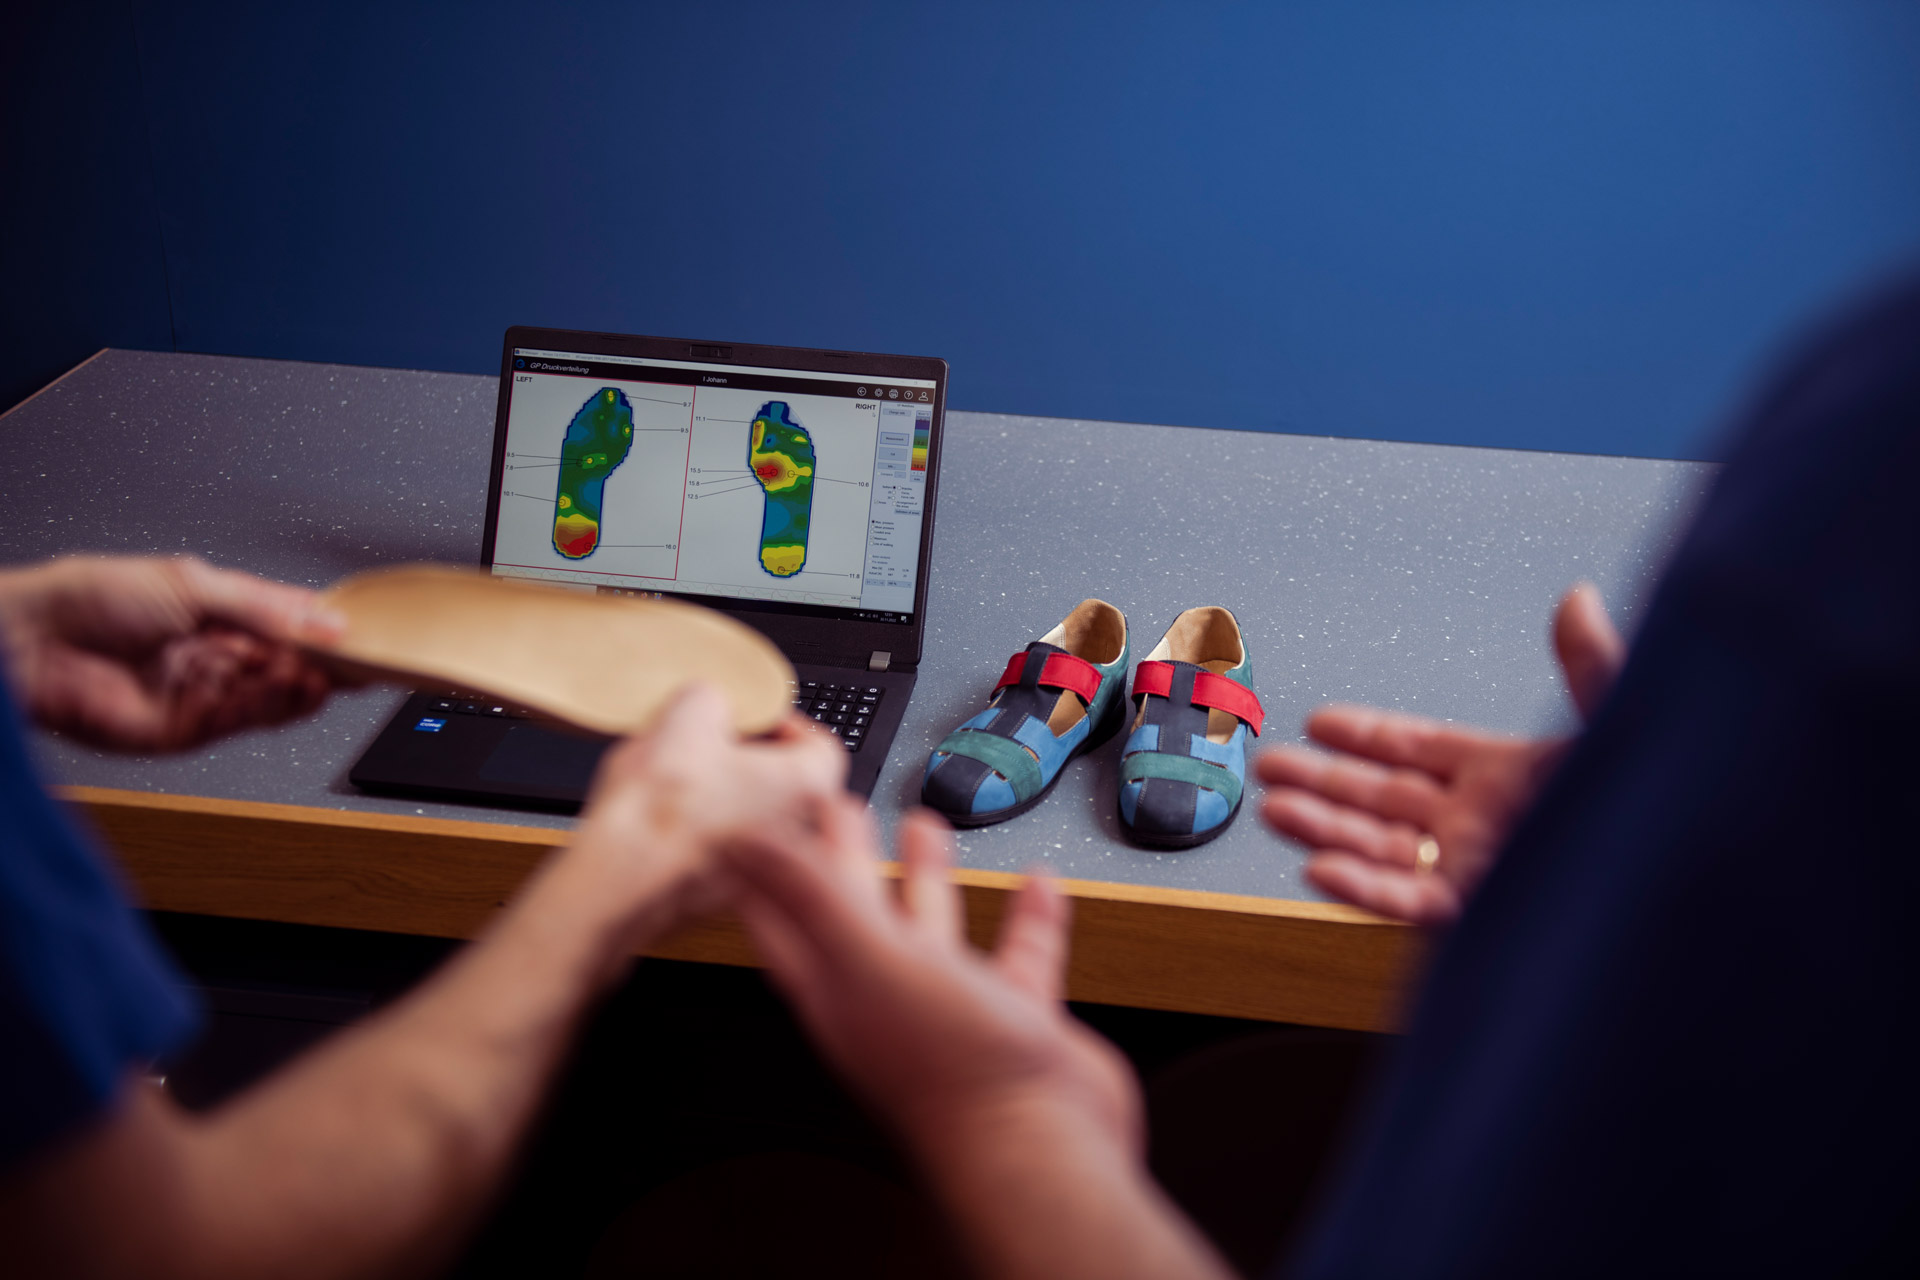 Auf dem Bild sind zwei Fachleute zu sehen, die eine Einlage für diabetisadaptierte Schuhe überprüfen. Im Hintergrund ist ein Monitor mit Einlagen, auf denen verschiedene Druckpunkte markiert sind.